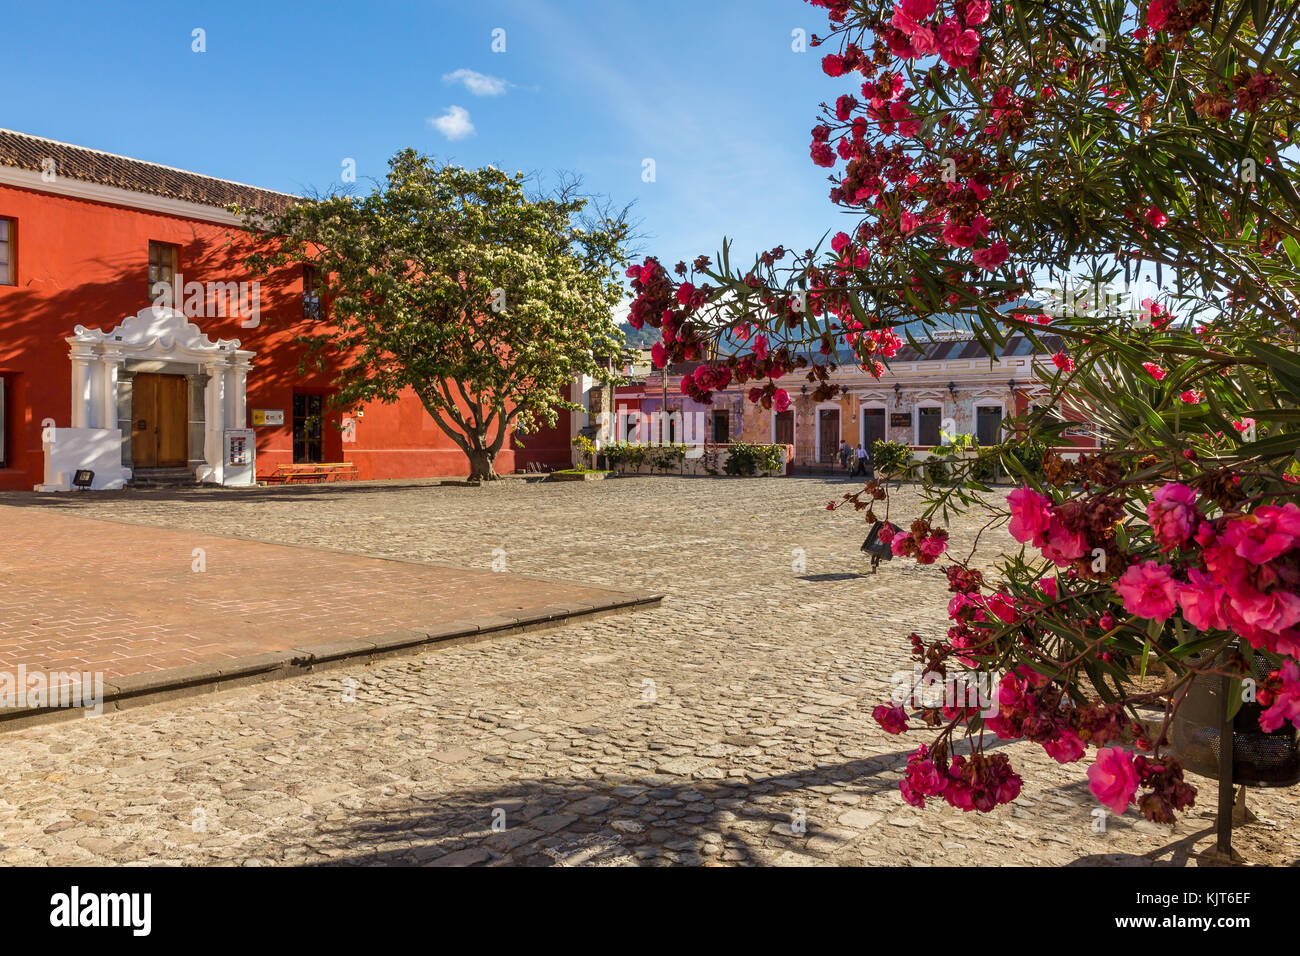 Convento de la Compañía de Jesús | Antigua | Guatemala Foto de stock